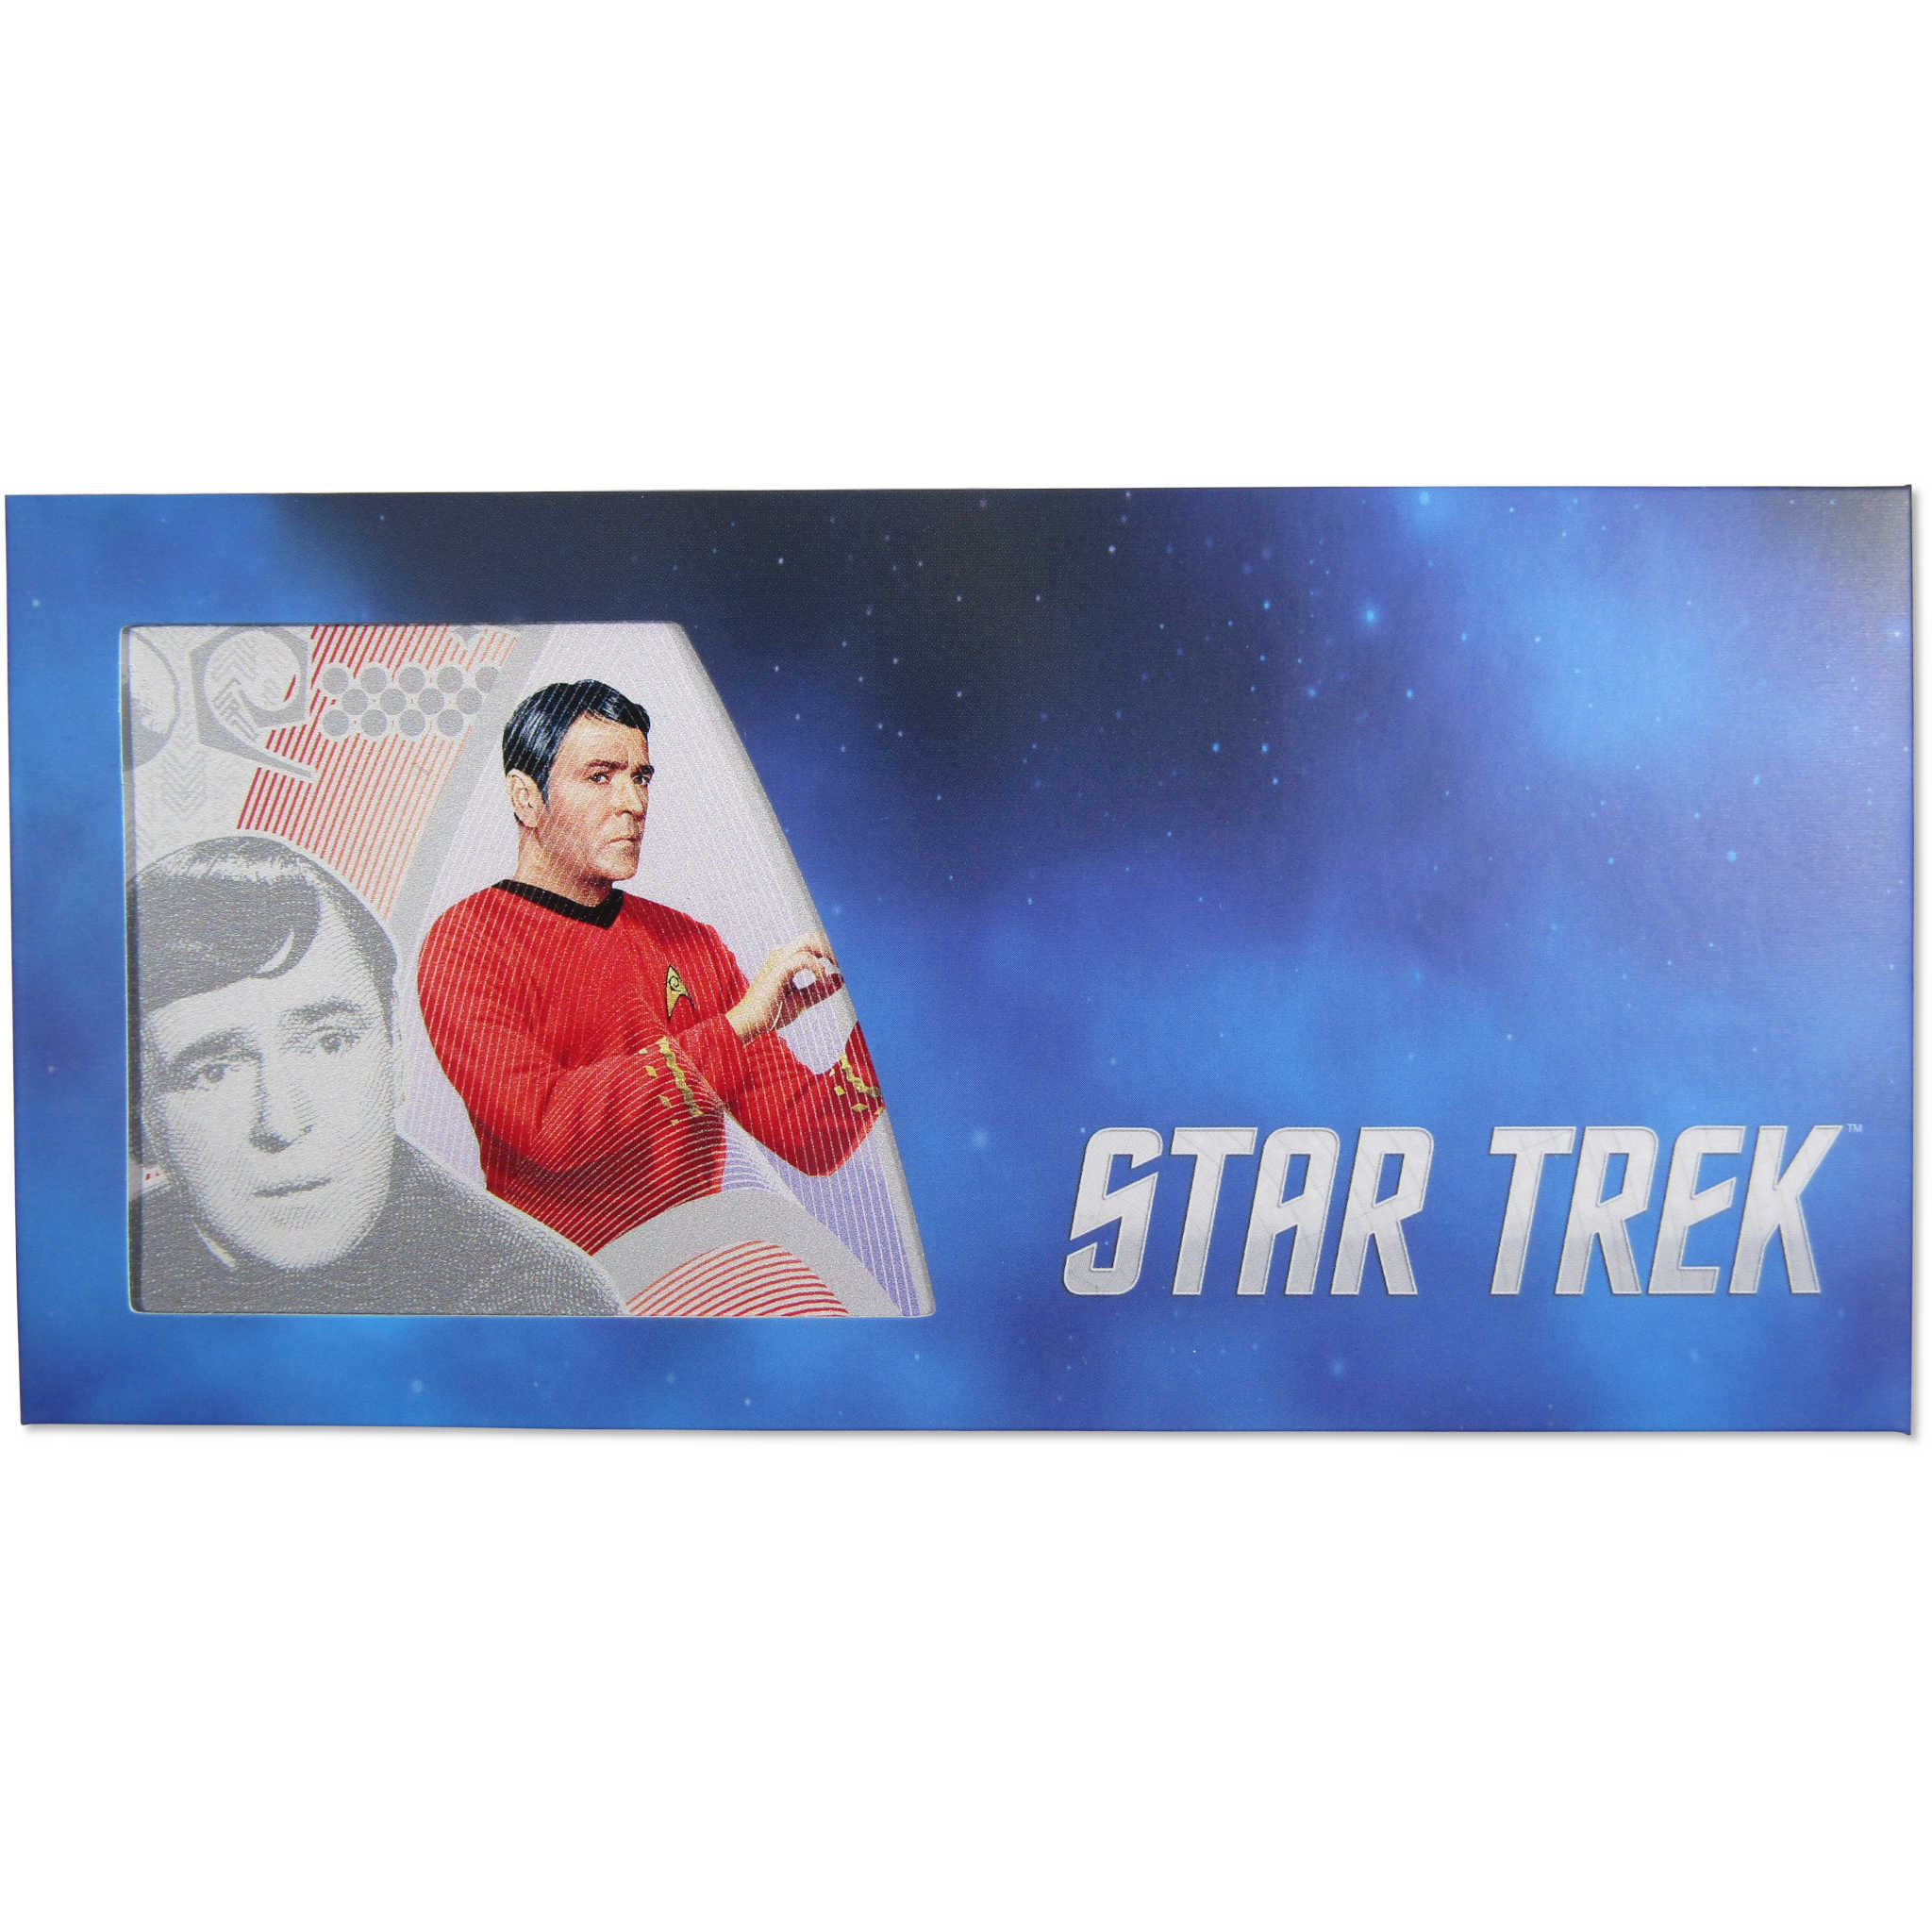 Star Trek Original Series Montgomery Scott 5g .999 Silver $1 Coin Note 2018 Niue